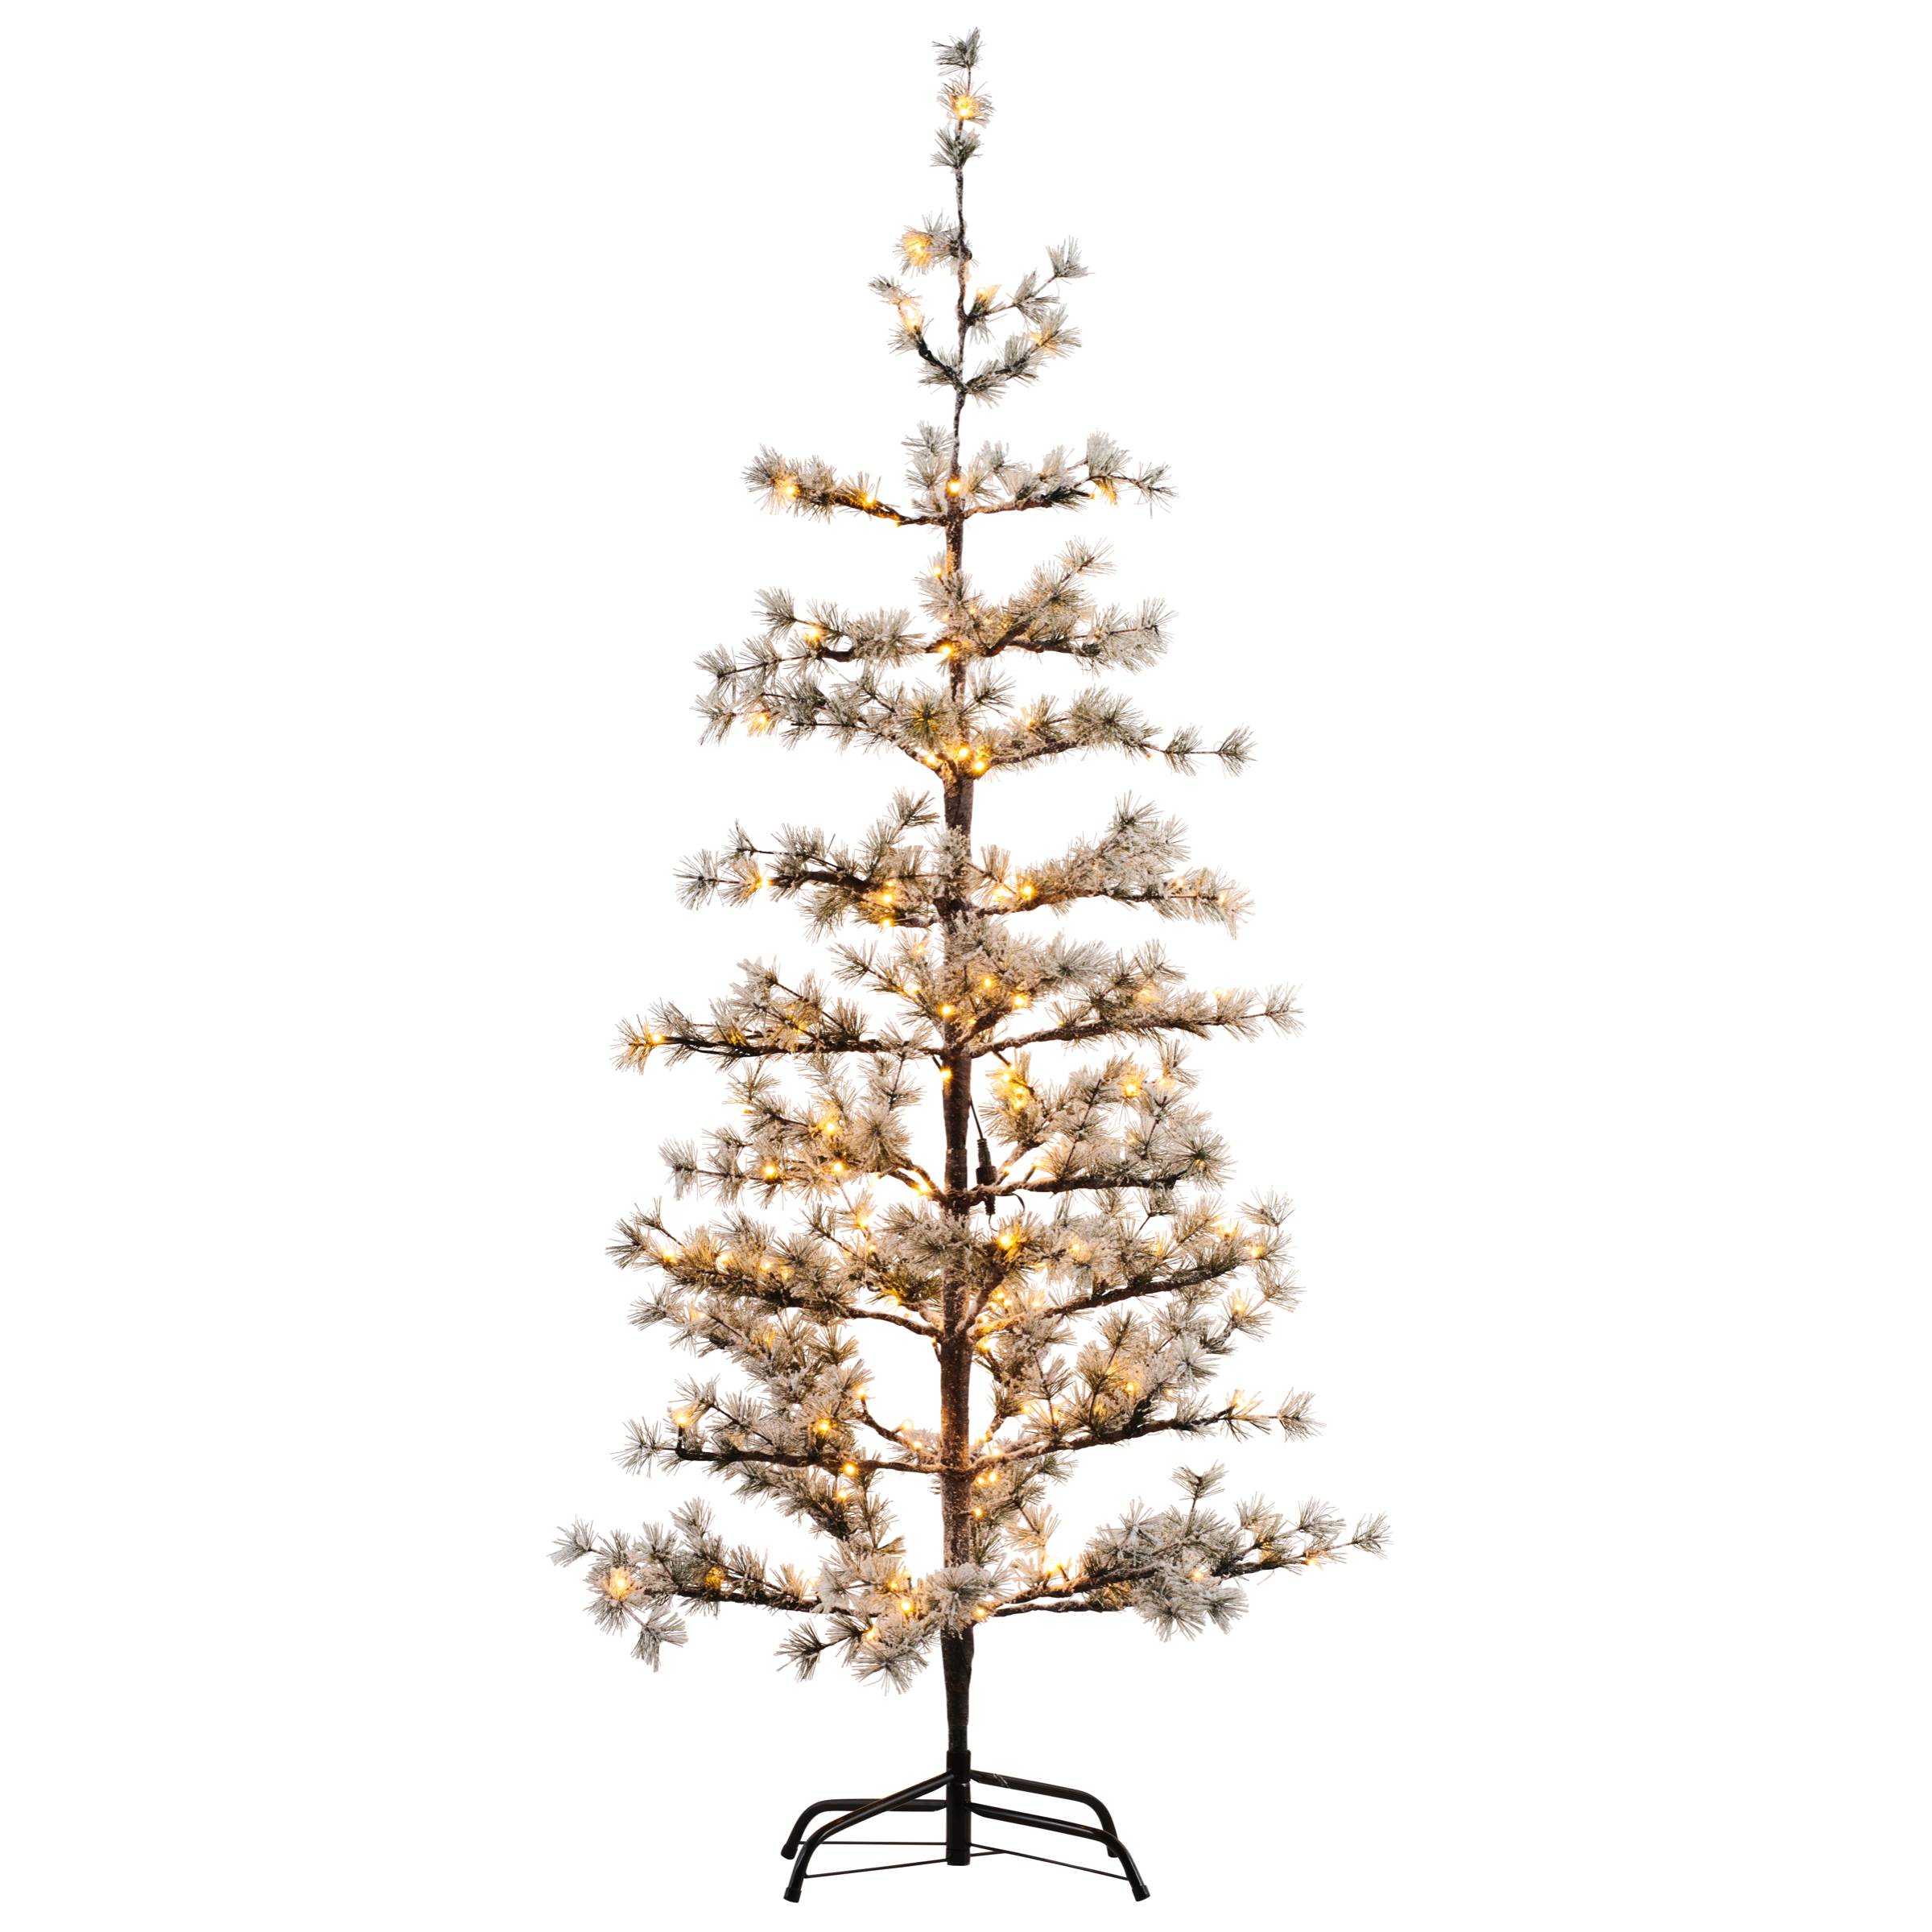 Sirius Alfi Christmas Snow Tree - Large 